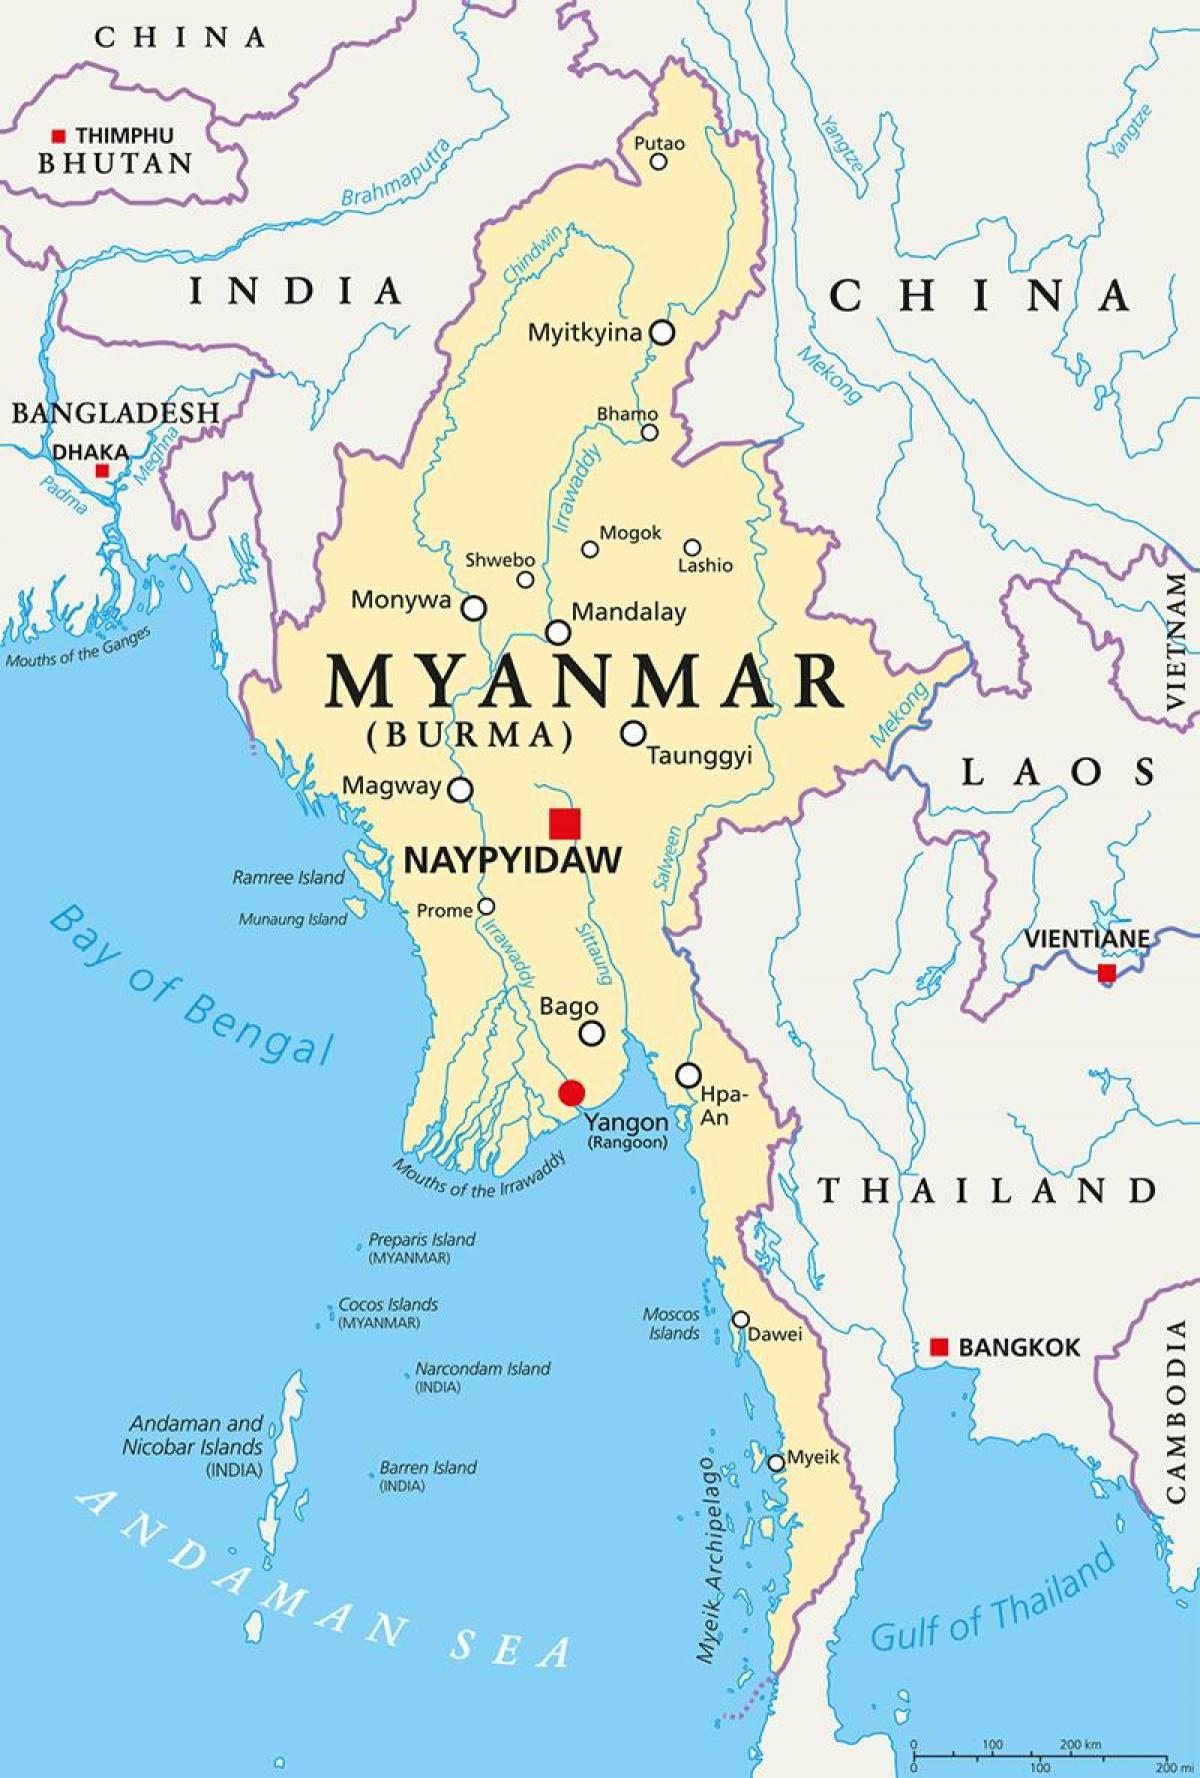 burma karta Burma karta zemlje   zemlje Mijanmar kartici (Jugo Istočna Azija  burma karta